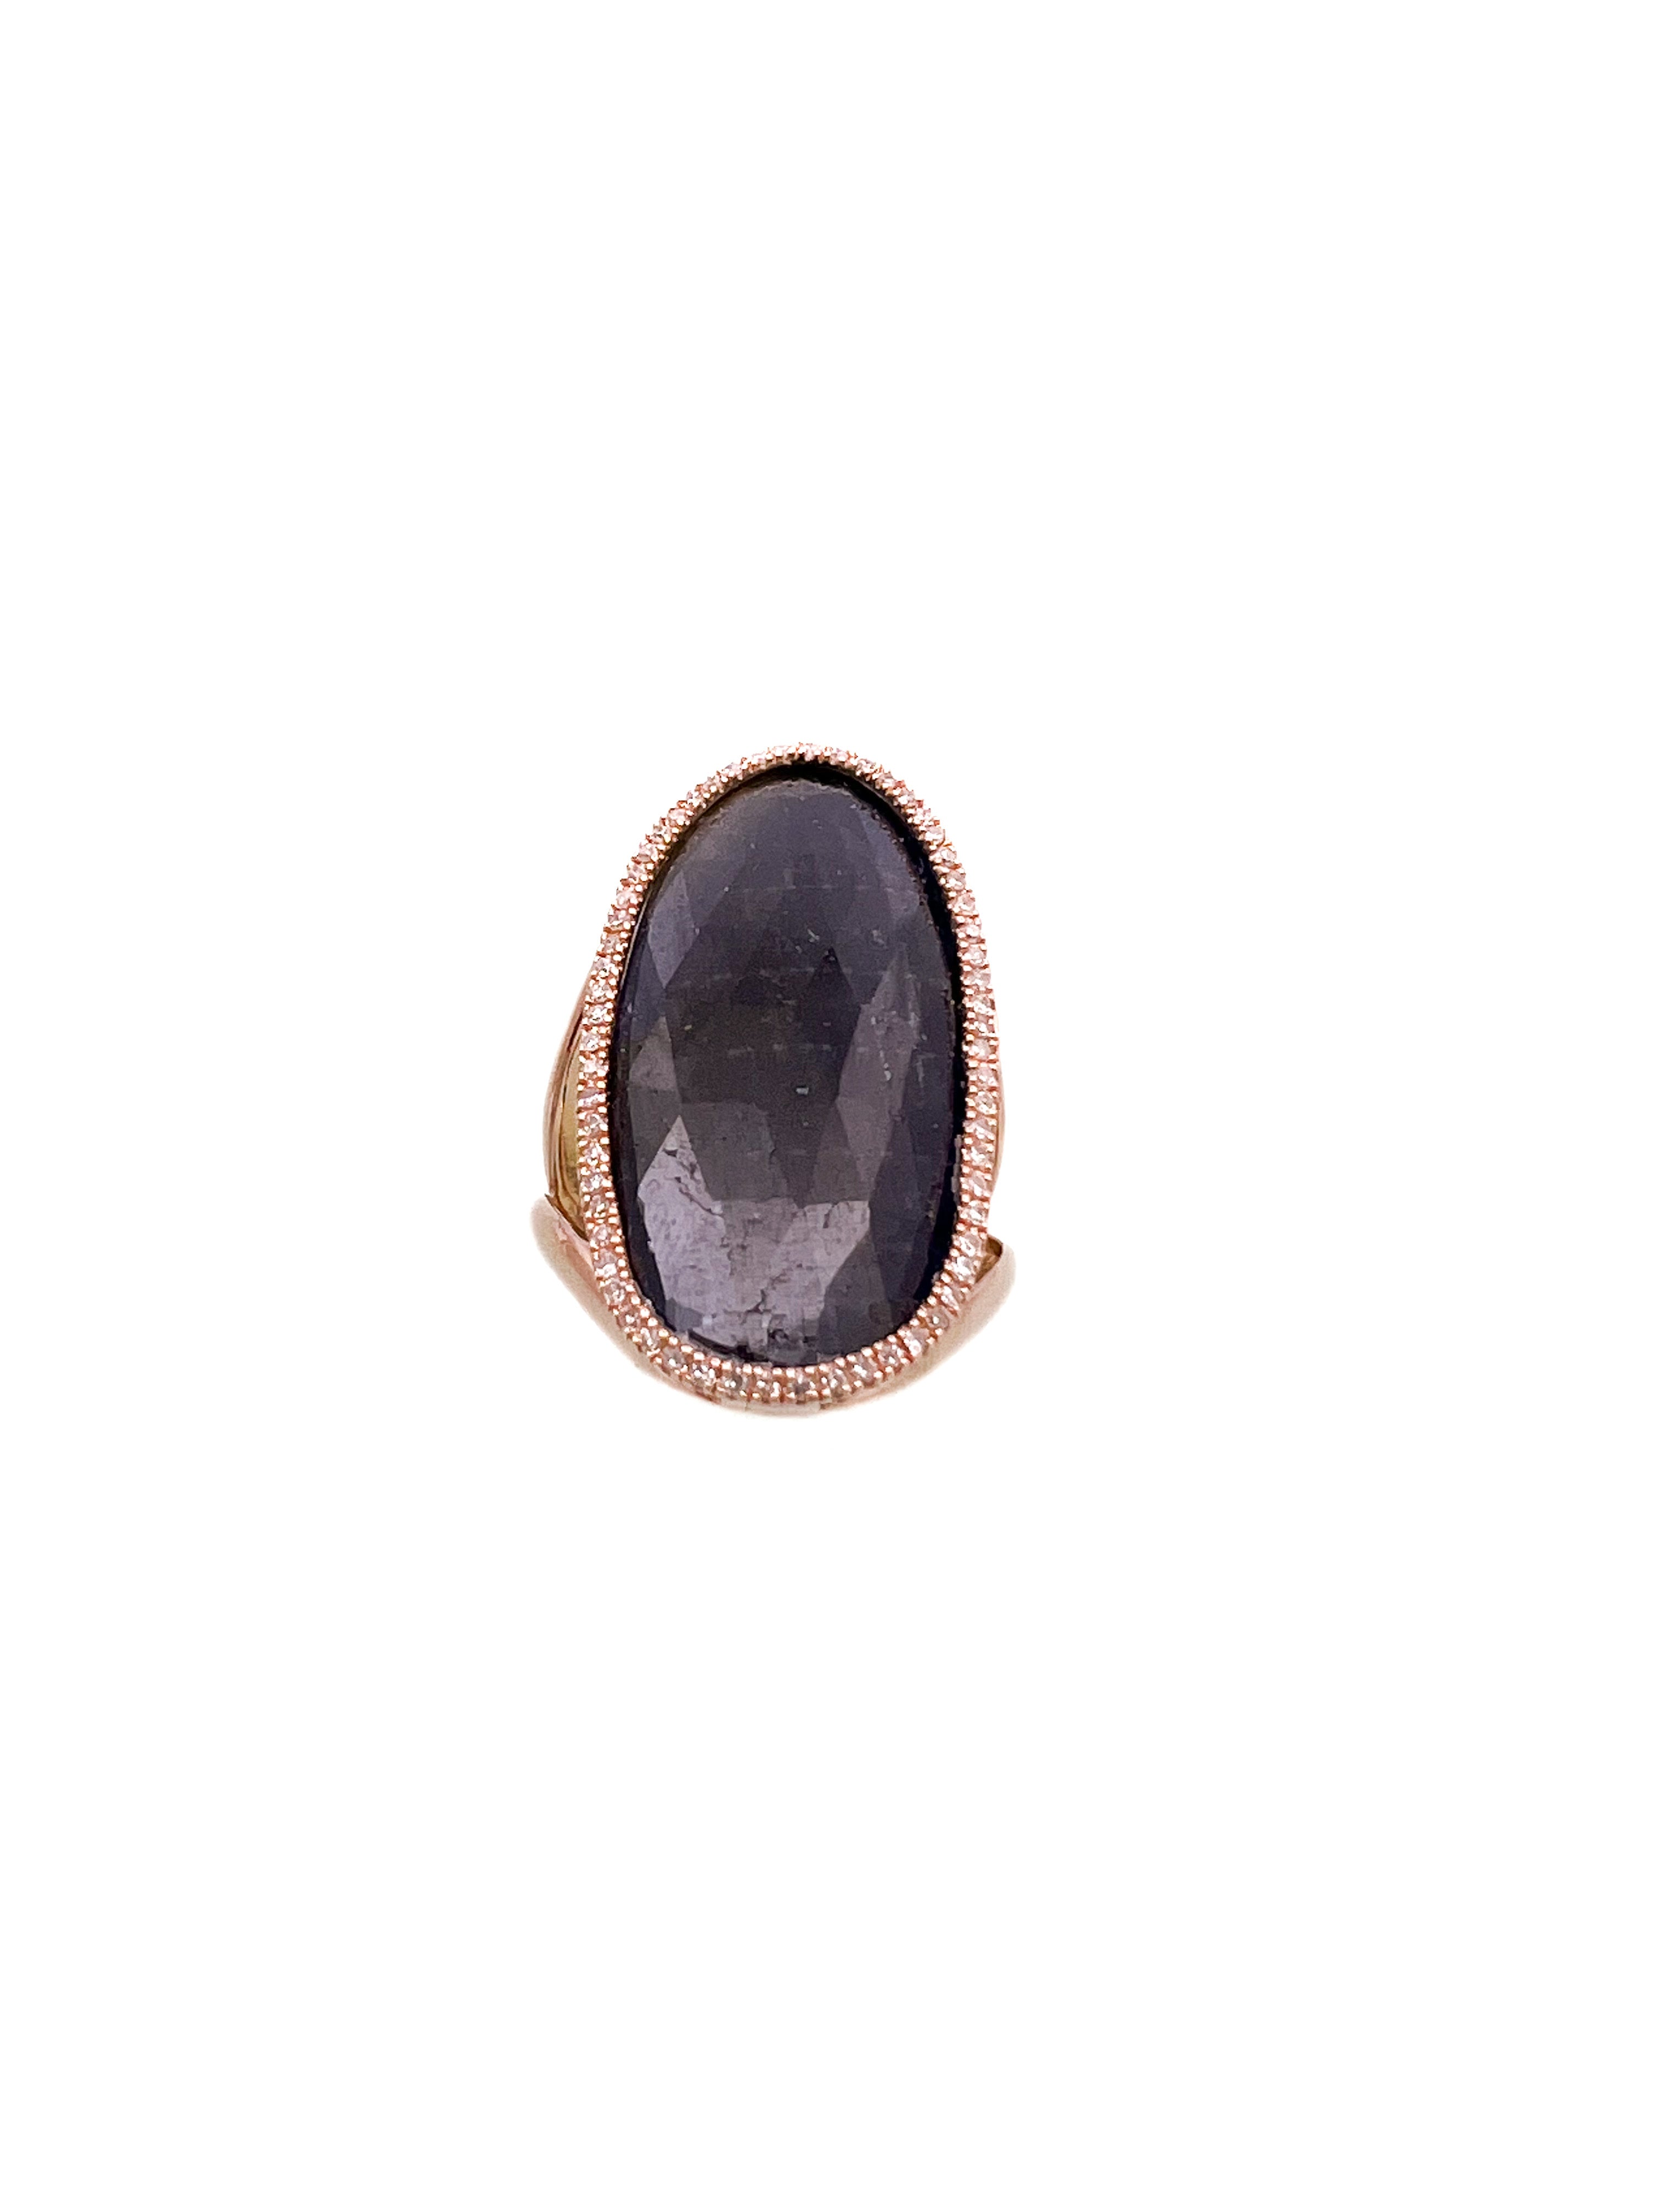 טבעת אובלית רוז גולד 14 קארט עם אבן חן כחולה ומסביב שיבוץ יהלומים